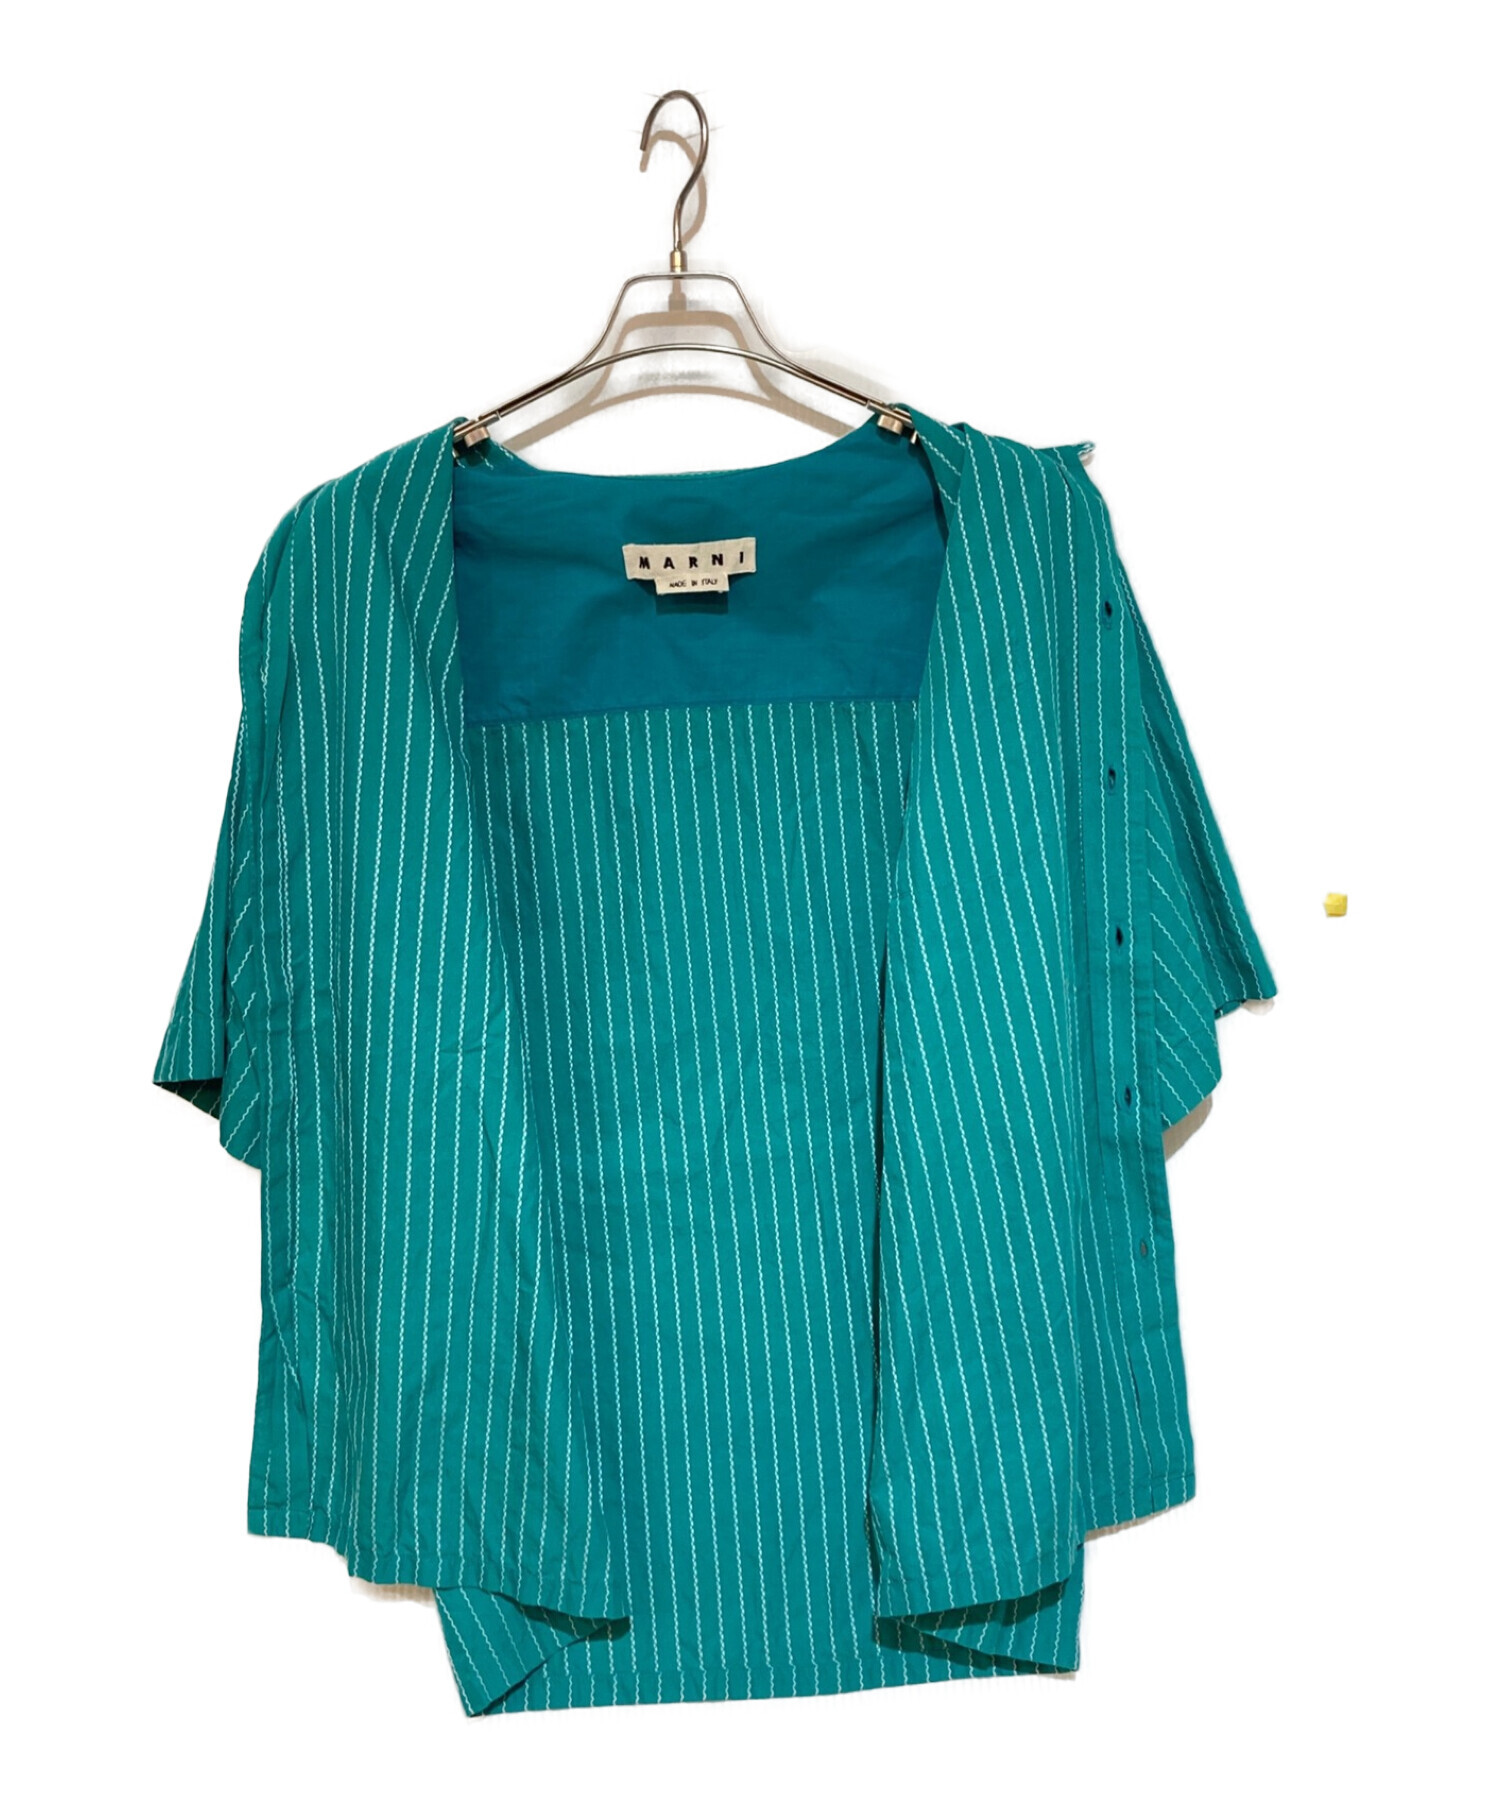 MARNI (マルニ) ストライプ オープンカラーシャツ グリーン サイズ:46